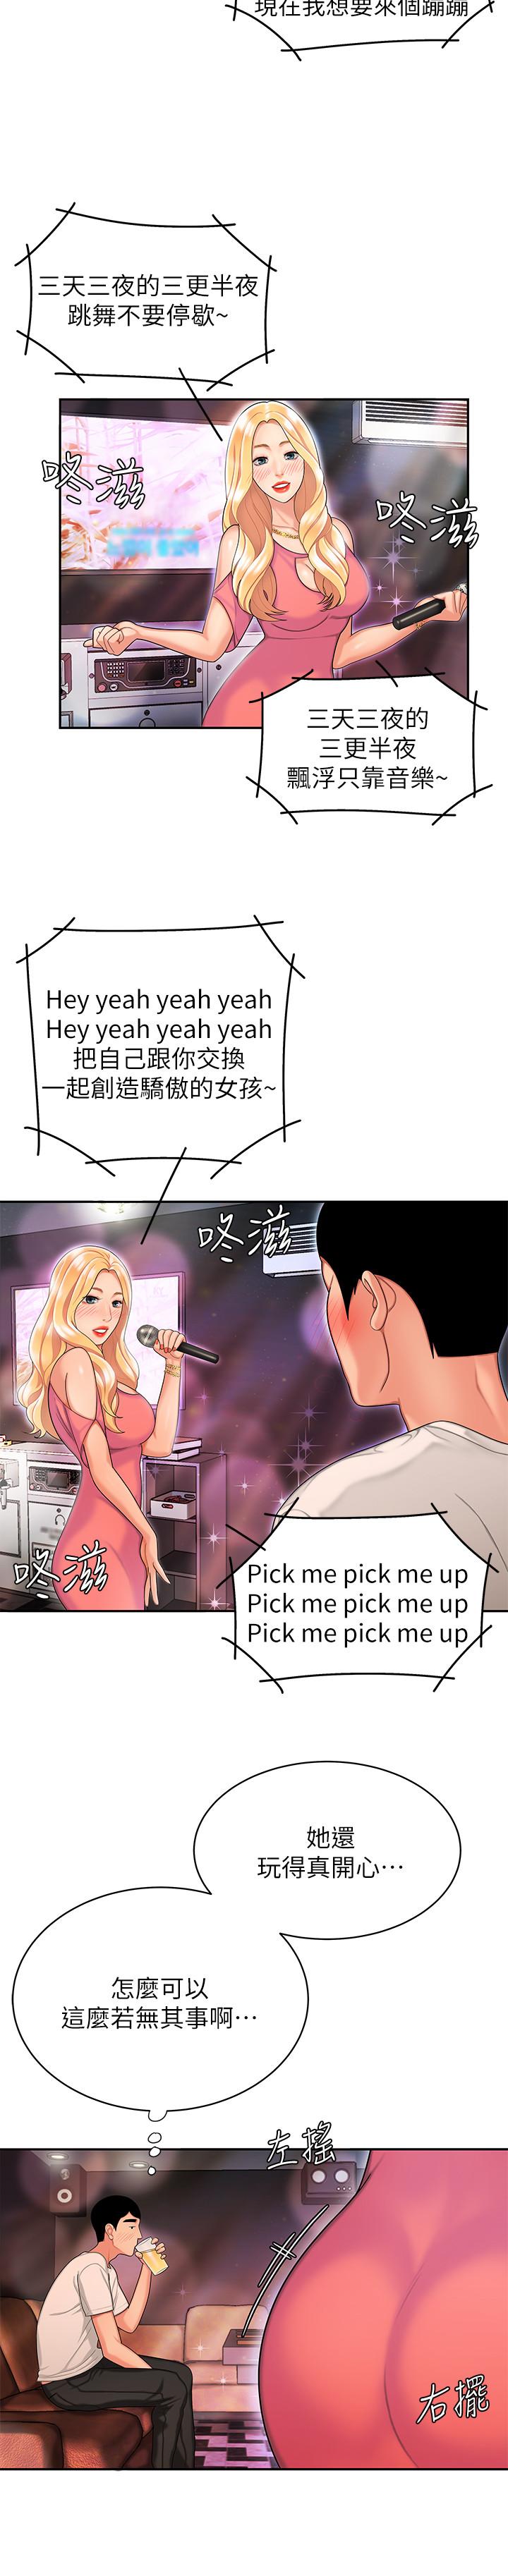 韩国污漫画 幸福外送員 第12话-炸鸡店老板不间断的诱惑 20